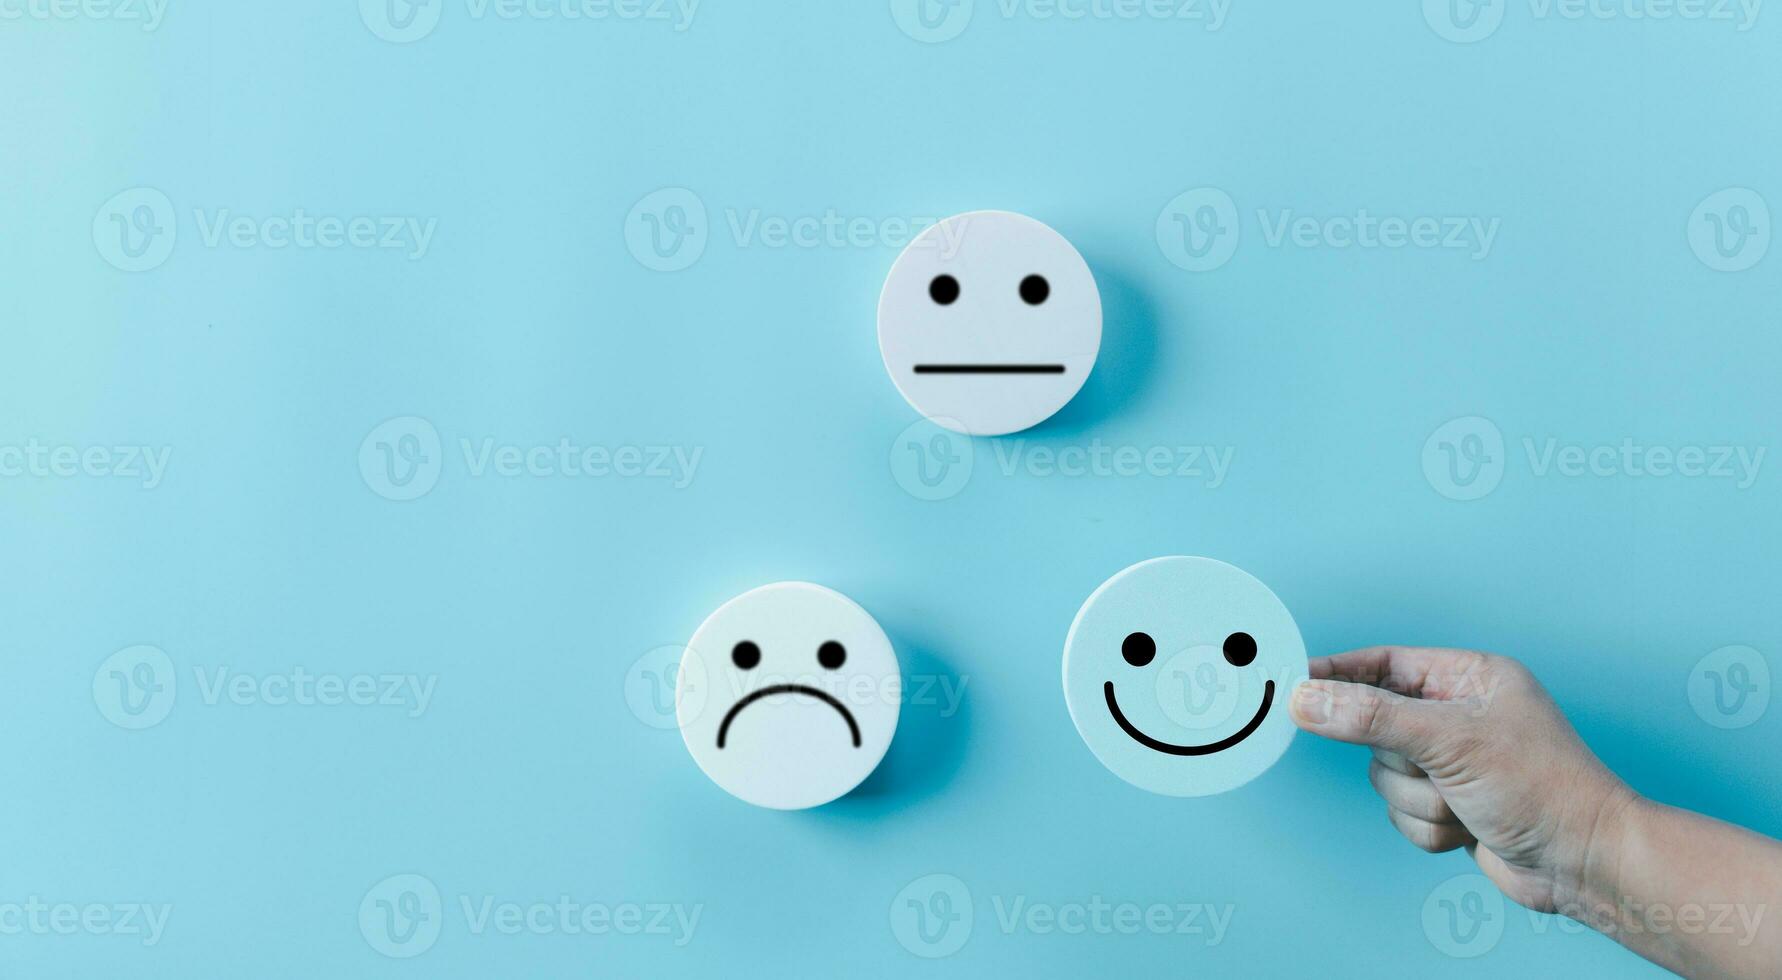 vrouw hand- Holding gelukkig gezicht glimlach gezicht icoon Aan ronde blauw voorwerp. klant ervaring en onderhoud met tevredenheid concept. positief denken, mentaal Gezondheid beoordeling, wereld mentaal Gezondheid dag. foto